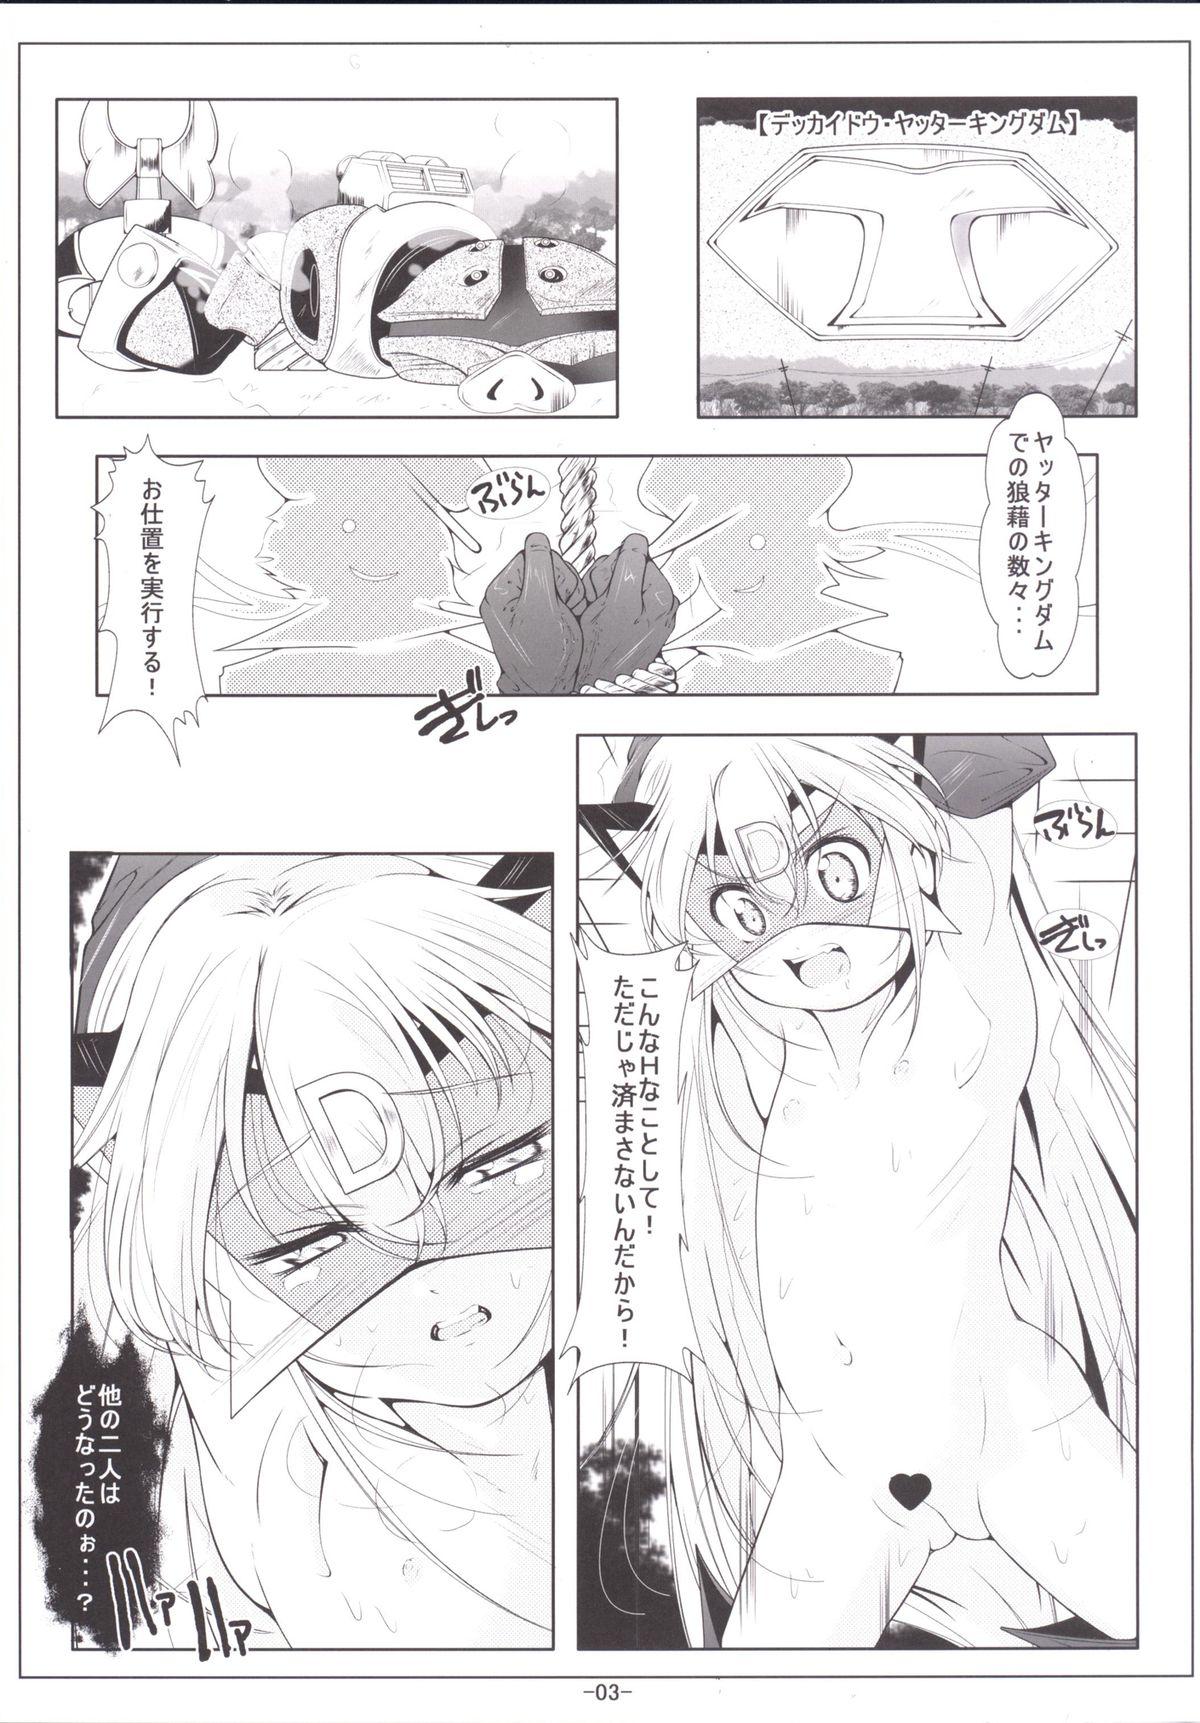 Stockings Leopard-chan Oshiri no Ana de Yoru no Oshigoto - Yoru no yatterman Novinha - Page 4